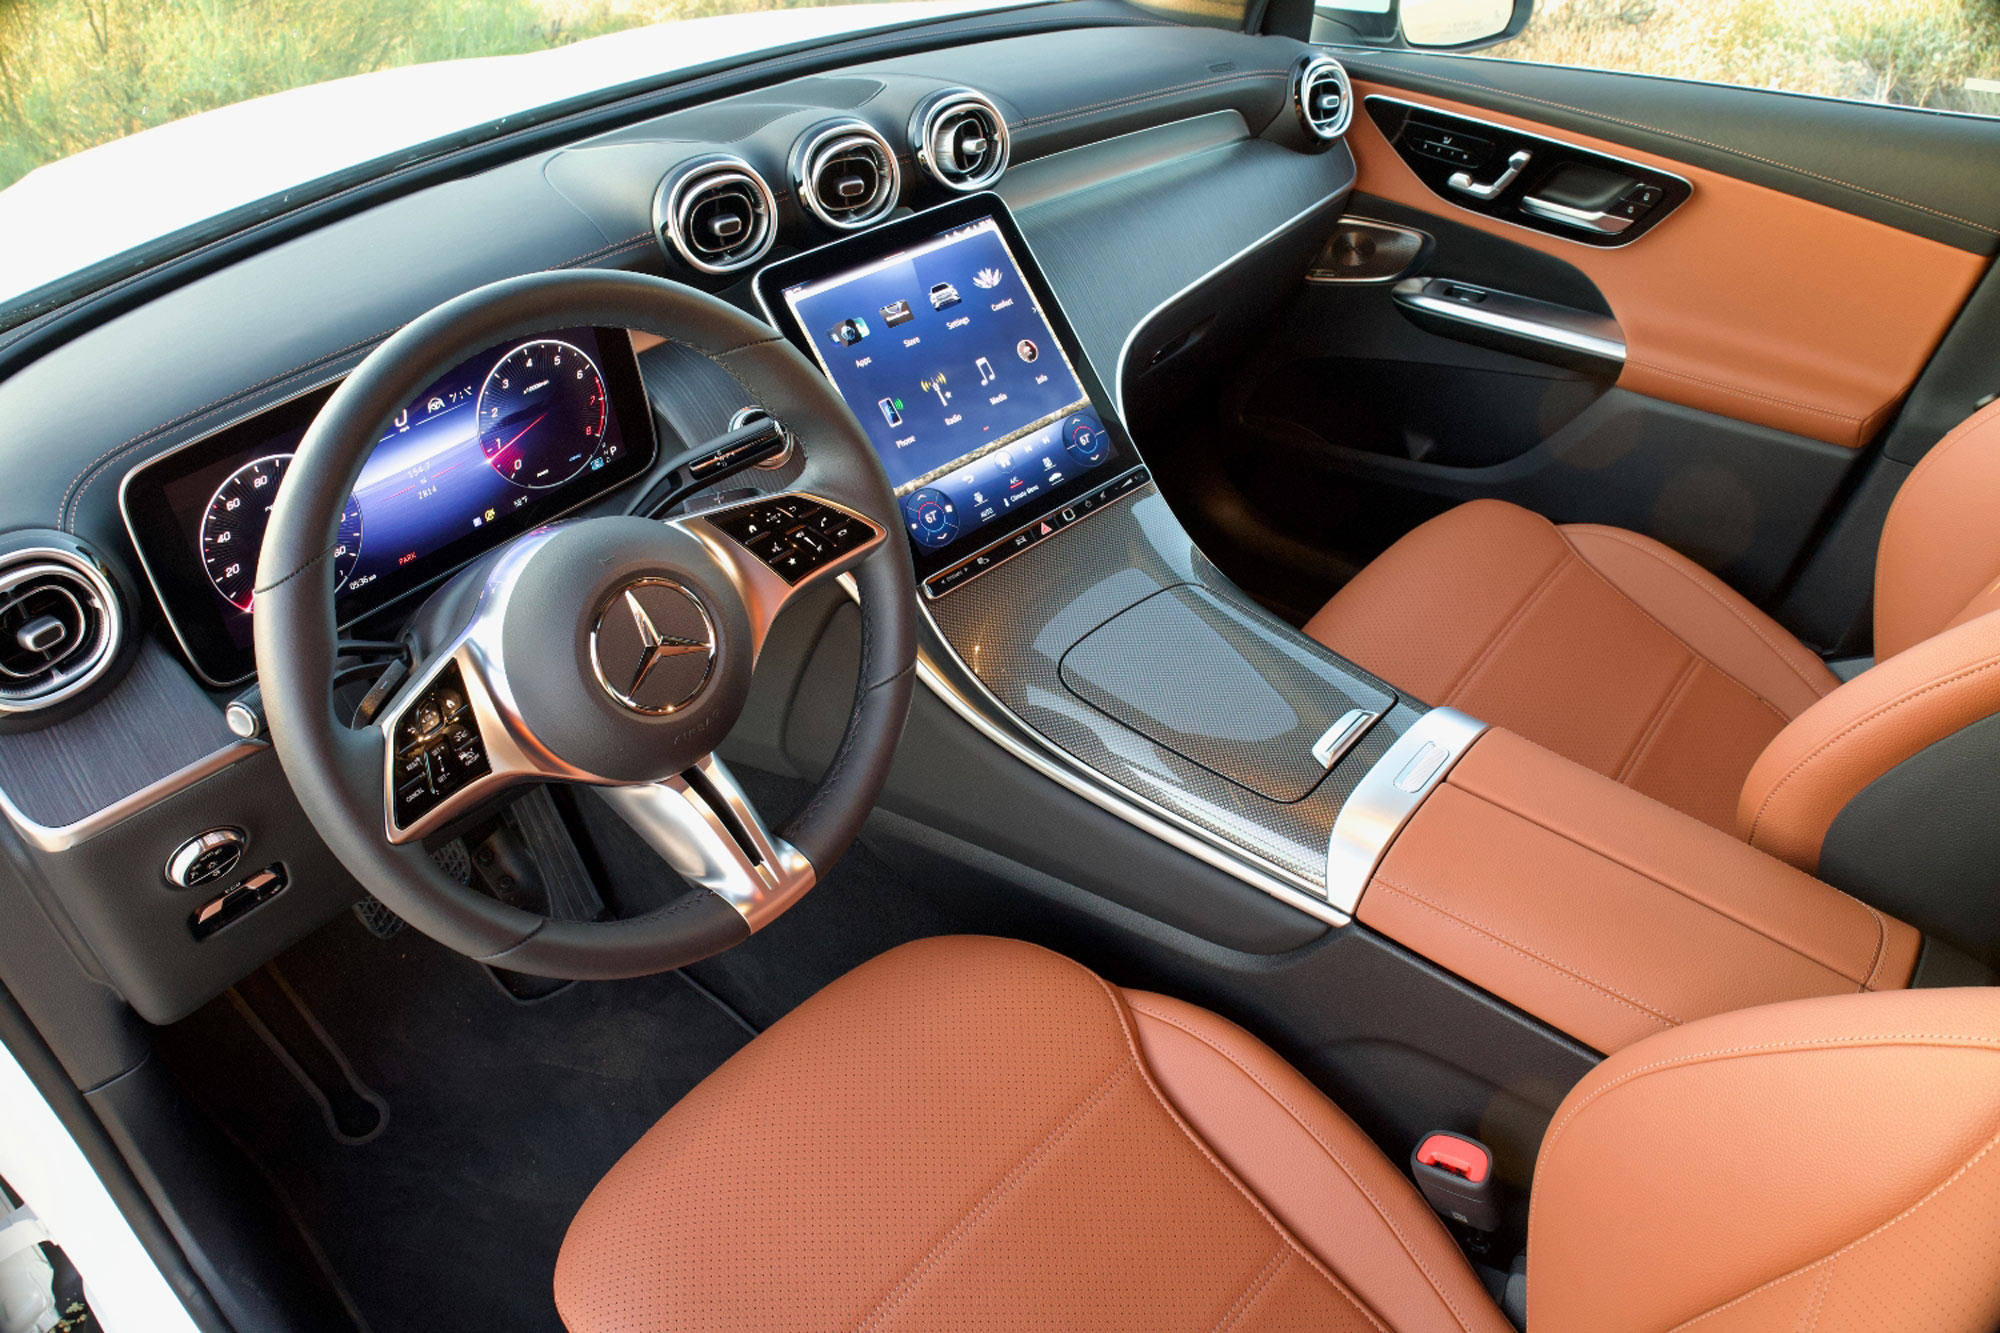 Mercedes-Benz GLC 300 4MATIC tech review